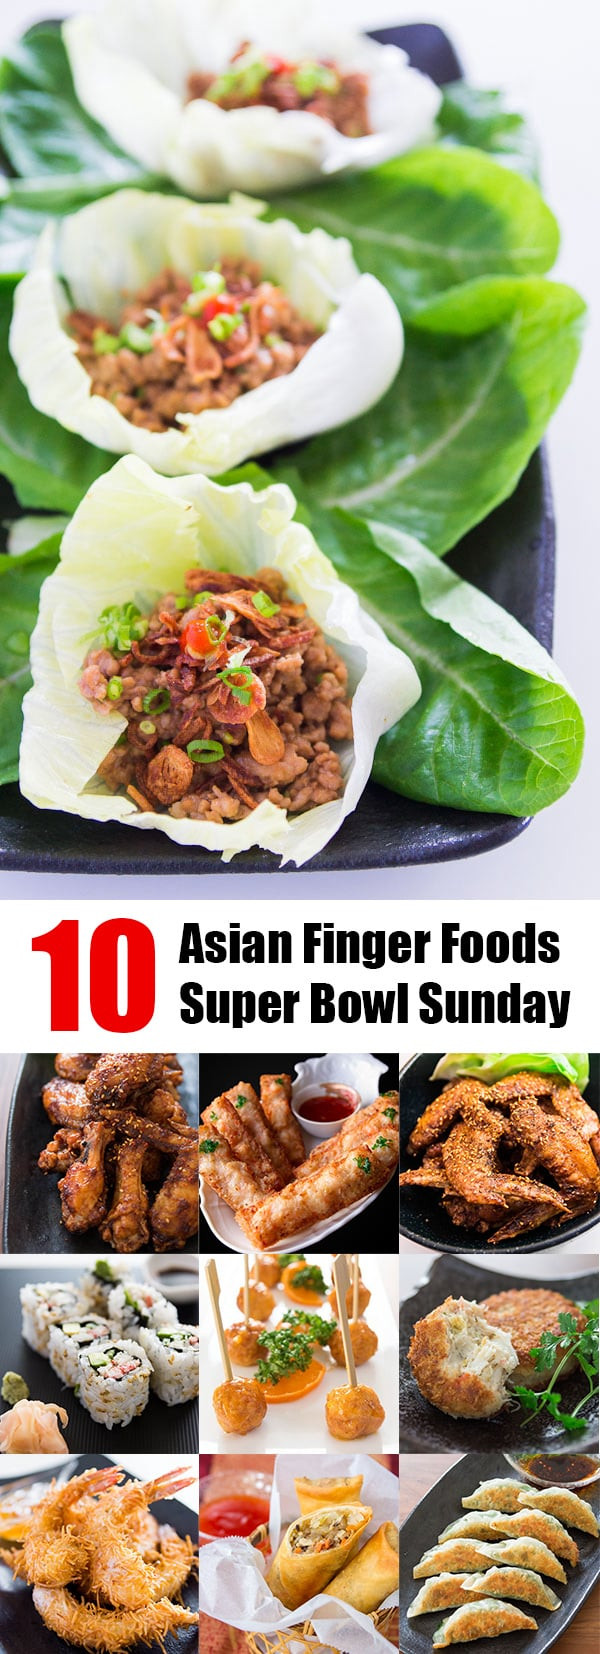 Super Bowl Finger Foods Recipes
 10 Asian Finger Foods for Super Bowl Sunday